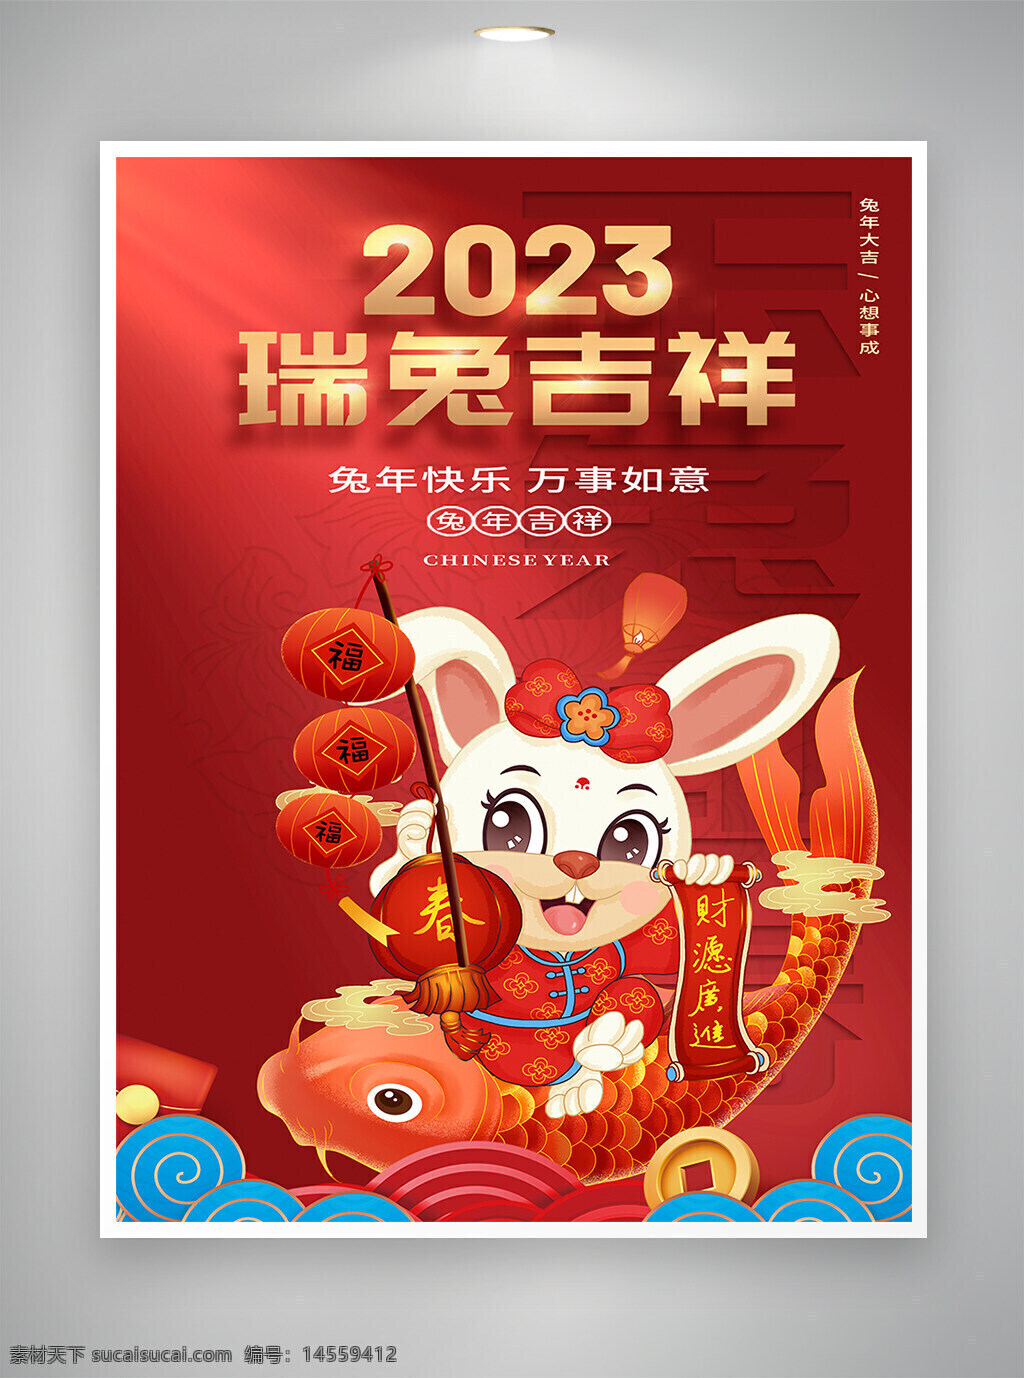 2023 2023兔年 2023新年 2023宣传 2023海报 兔年 兔年新年 兔年宣传 兔年海报 新年 新年宣传 新年海报 宣传海报 海报